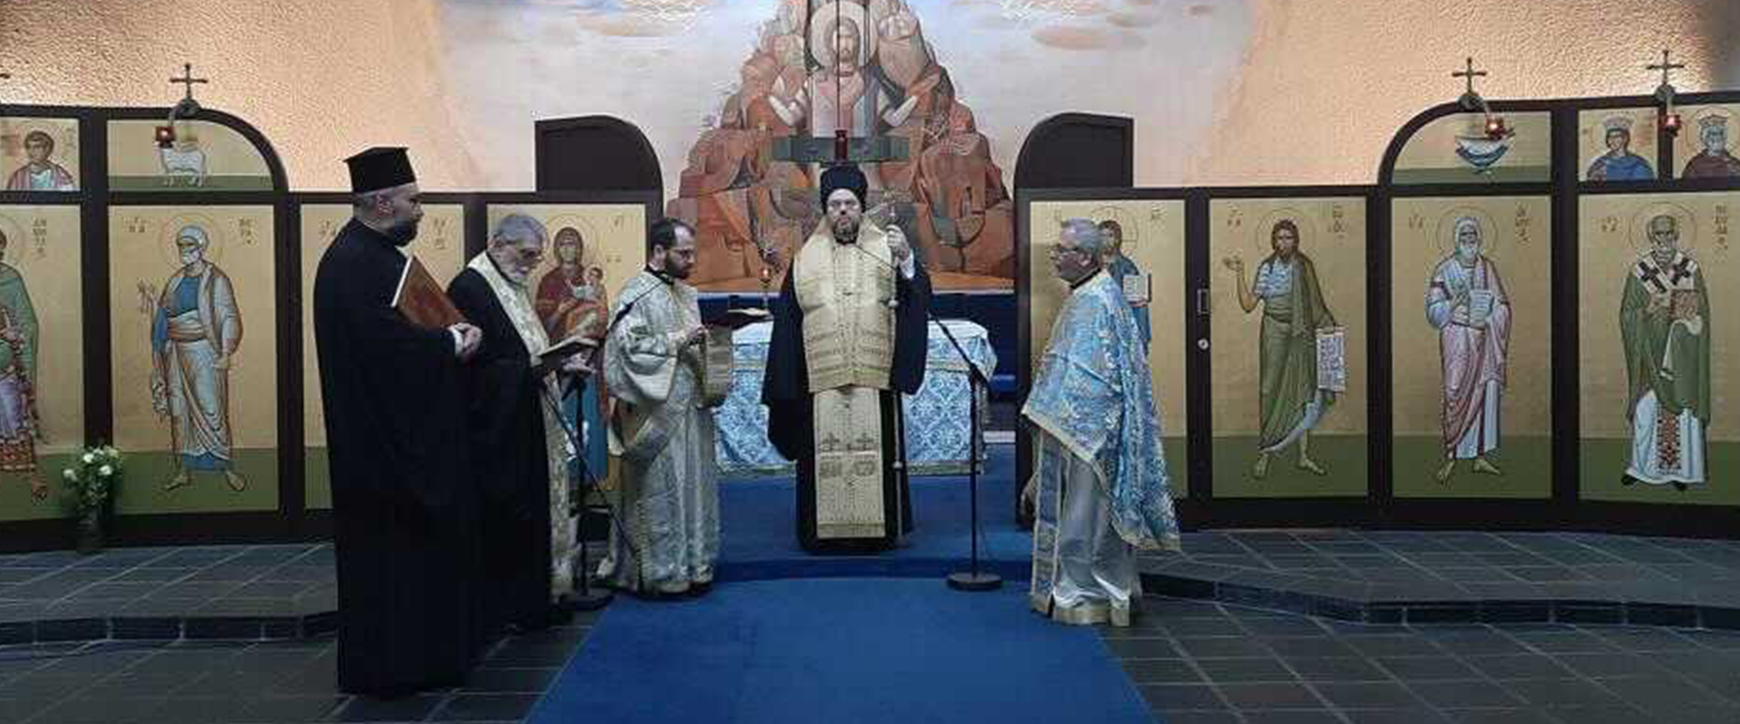 Τρισάγιο στον Ναό του Αποστόλου Παύλου στο Σαμπεζύ για τους Γέροντα Νικαίας Κωνσταντίνο και Νικόλαο Μαγγίνα